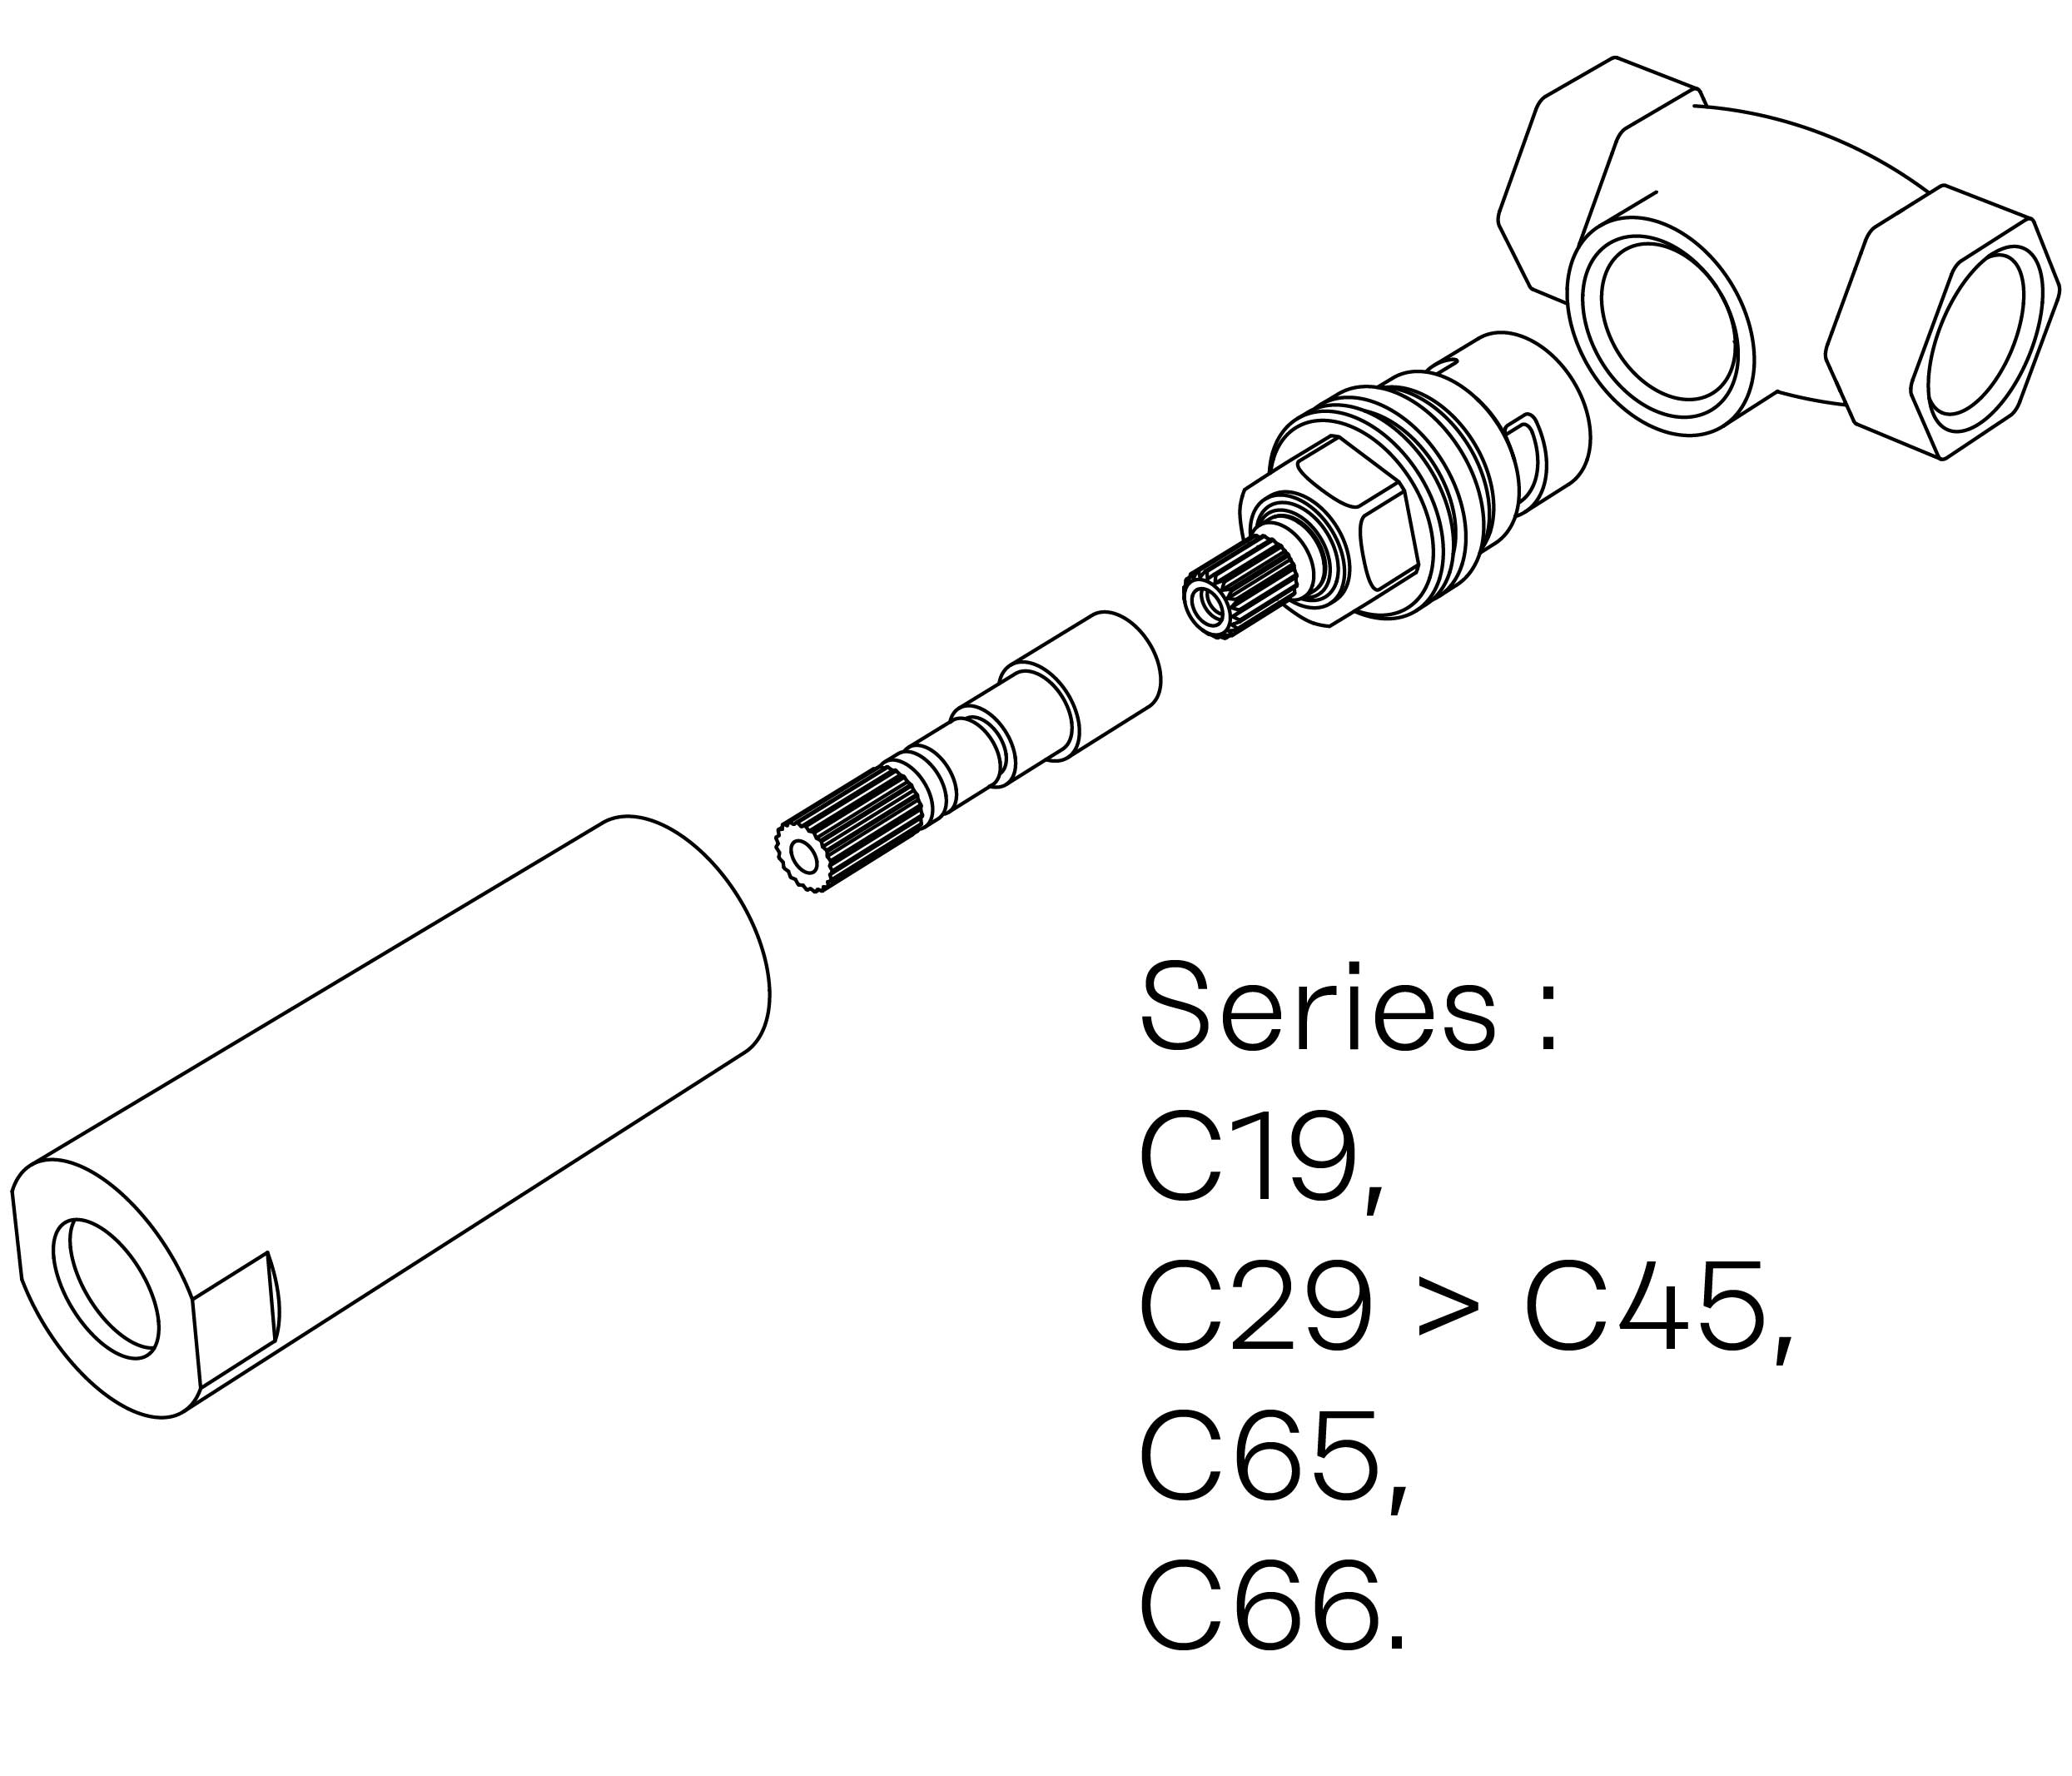 C00-23K28C Kit #3 for W-M valve 1/2″, 1/4 turn, Right